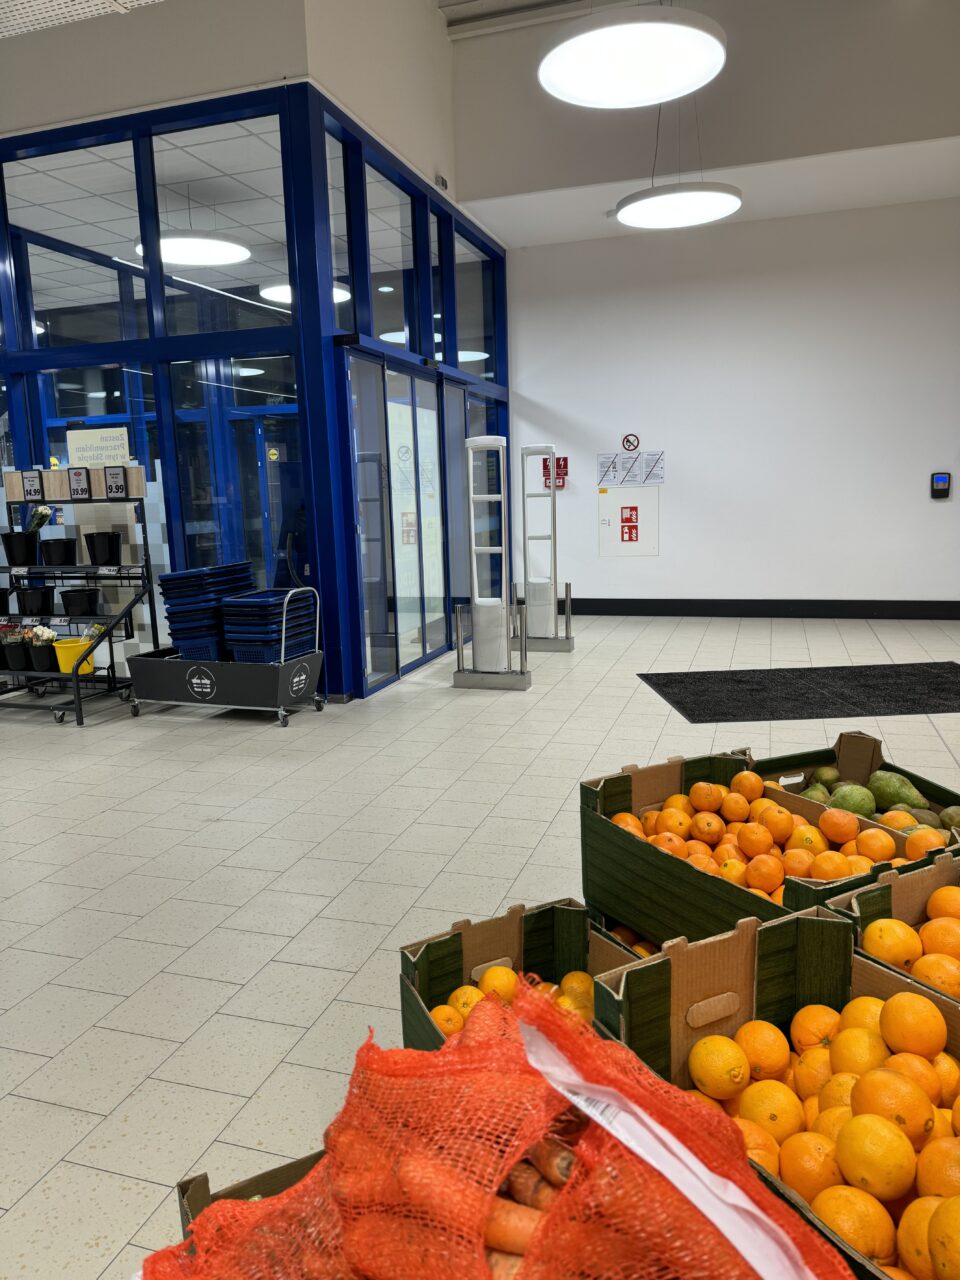 Wejście do supermarketu Lidl z wyeksponowanymi skrzynkami ze świeżymi pomarańczami i marchewką, widoczne wózki na zakupy, niebieskie drzwi i plakaty z instrukcjami bezpieczeństwa.